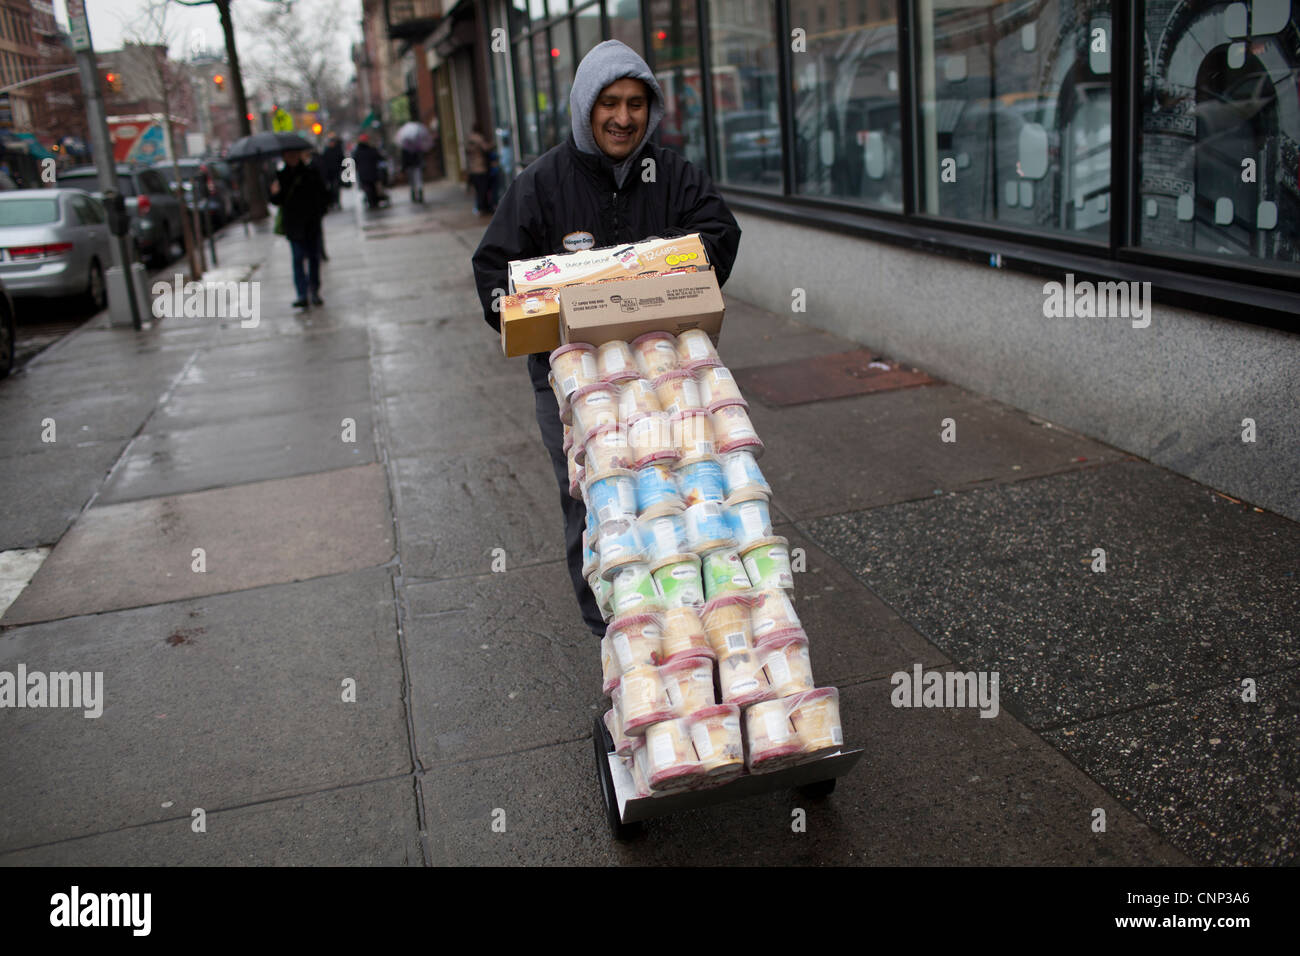 La prestation d'un homme pousse un chariot chargé avec Haagen-Das crème glace à Brooklyn, New York. Banque D'Images